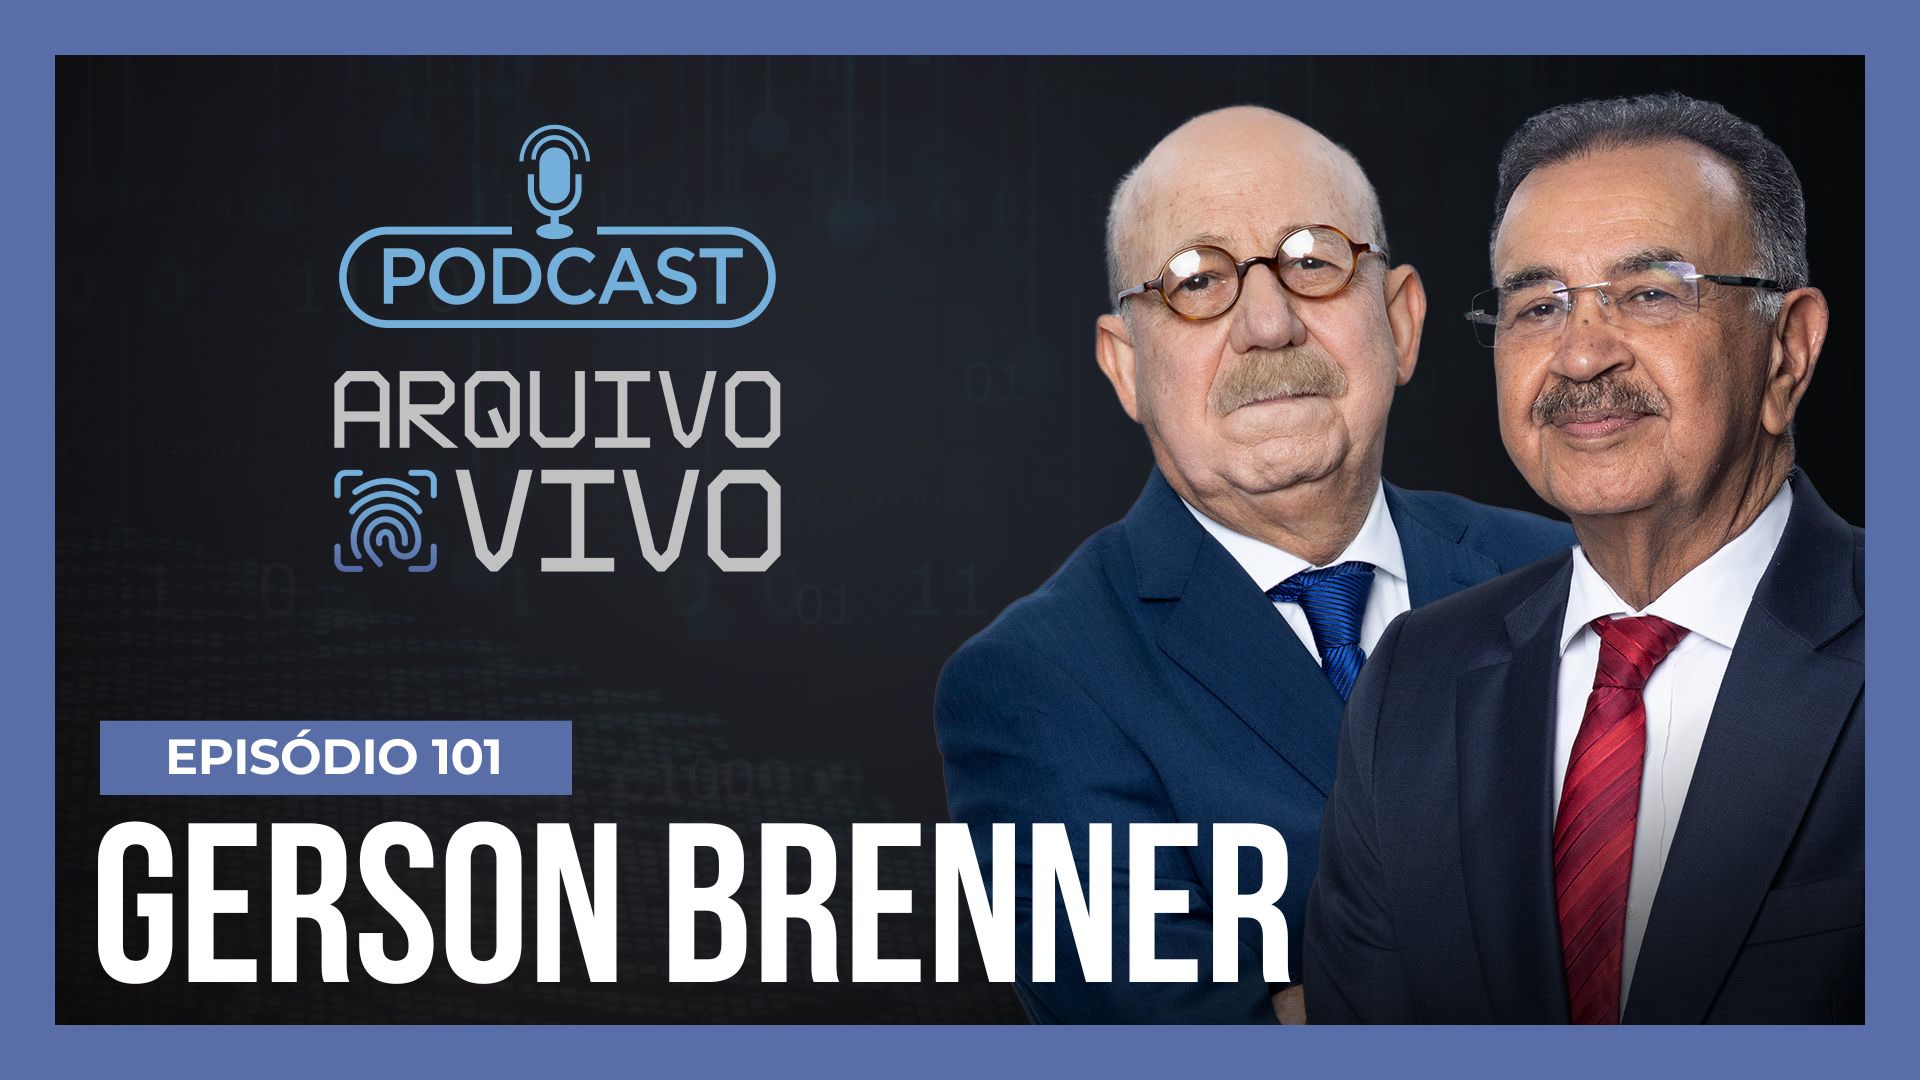 Vídeo: Podcast Arquivo Vivo : 25 anos do Caso Gerson Brenner, uma emboscada no auge do sucesso | Ep. 101